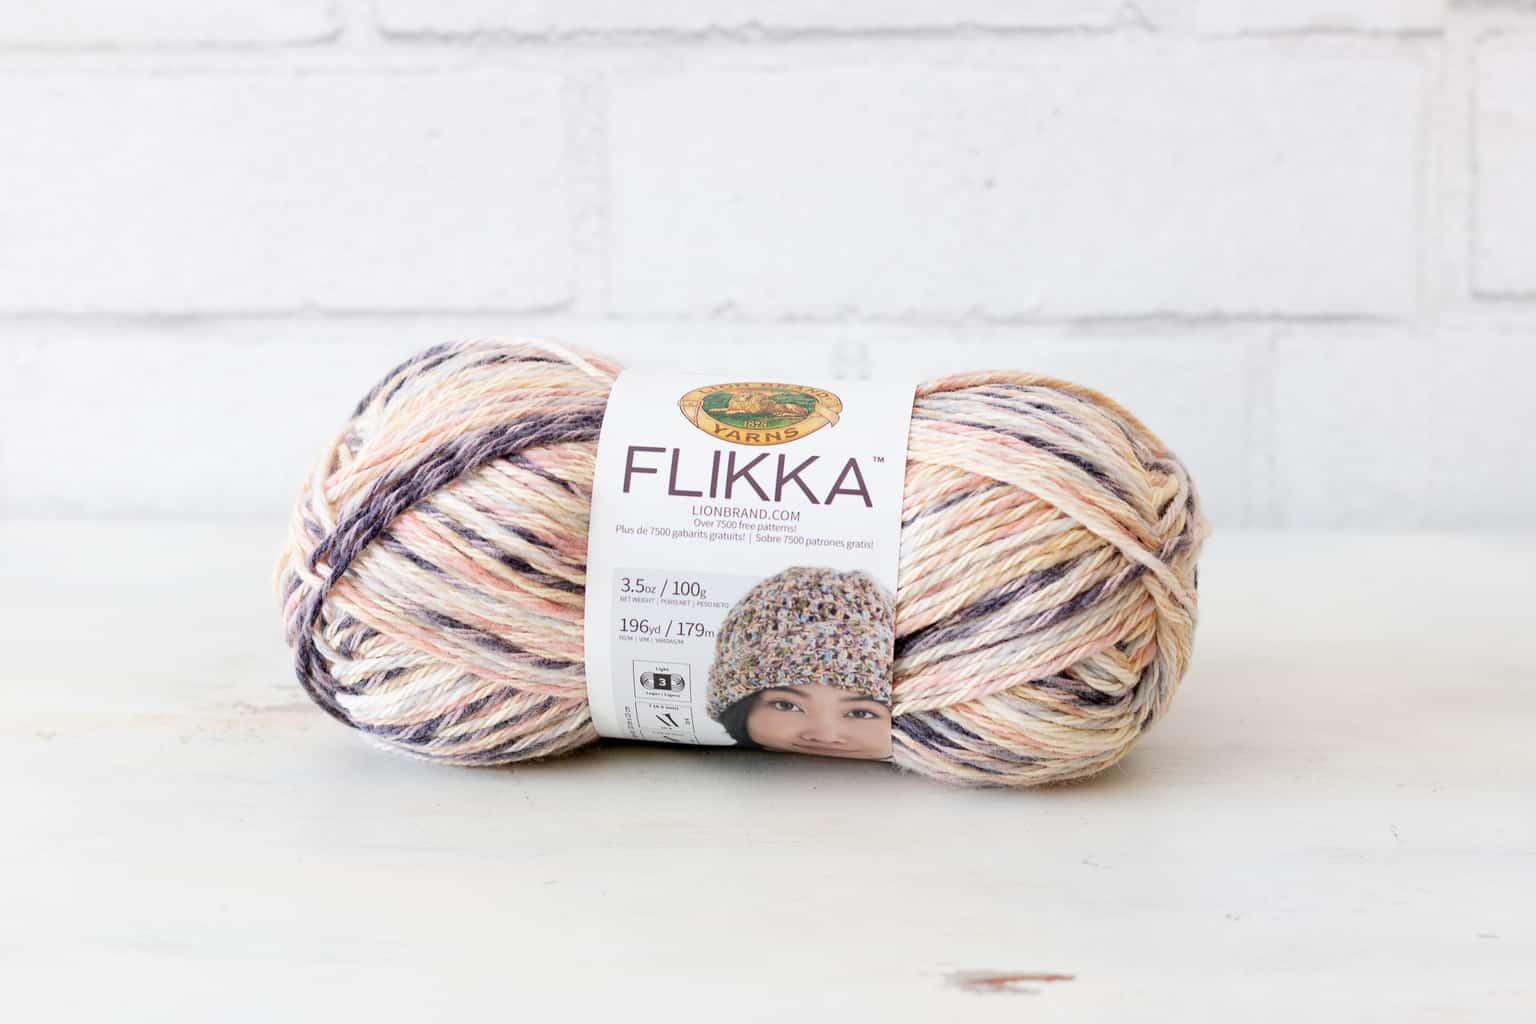 Flikka Yarn Lion Brand Yarn